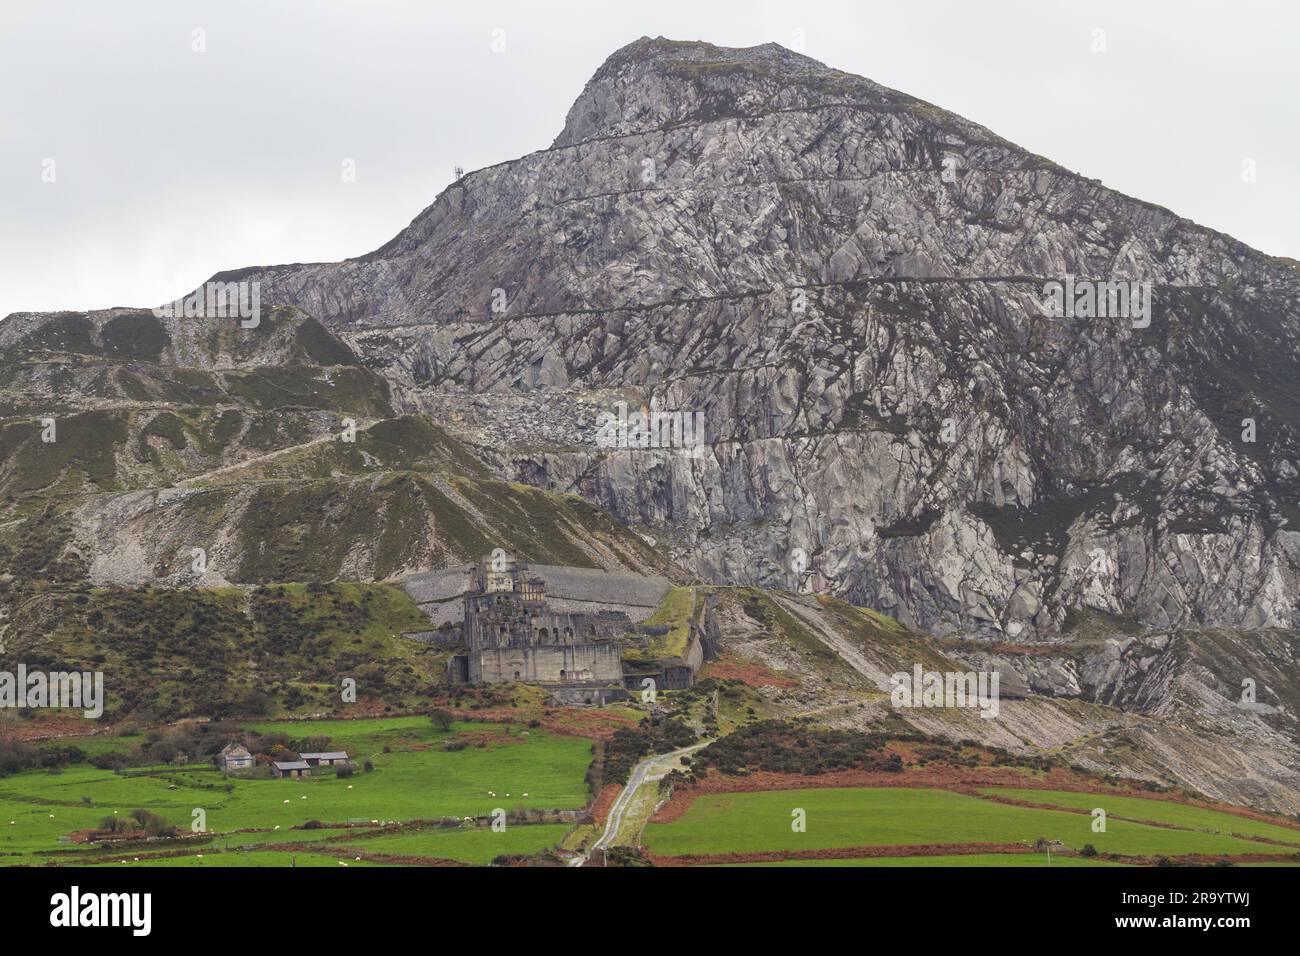 Trefor Granite Quarry et Garn pour la montagne sur la péninsule de Llyn, au nord du pays de Galles, paysage. Banque D'Images